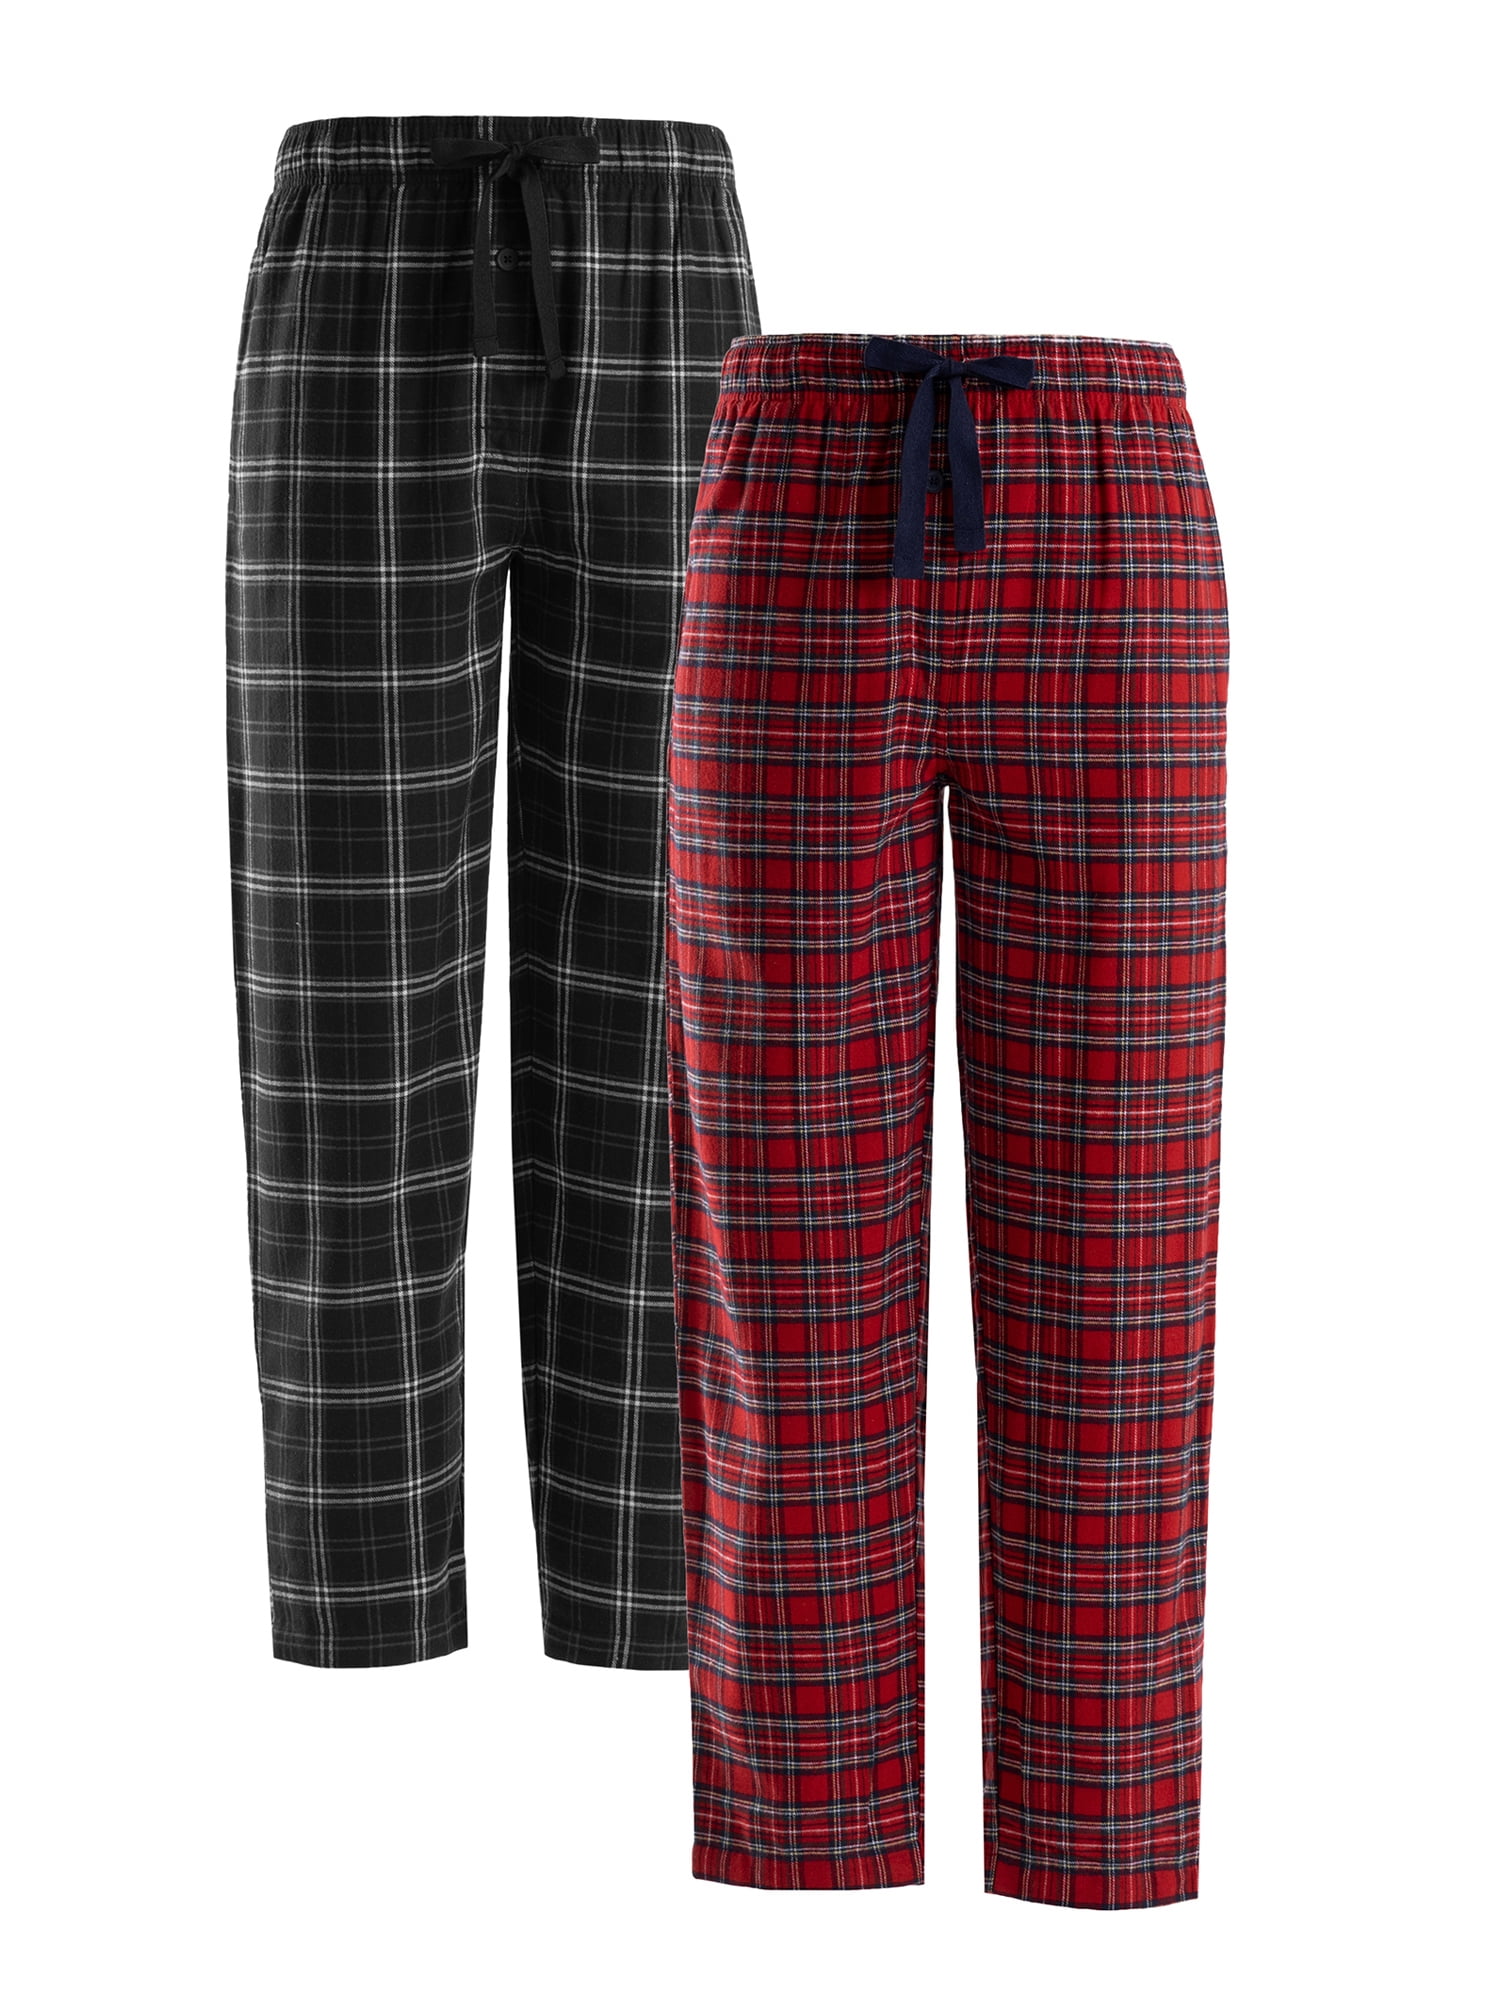 Men's Flannel Pajamas Pants